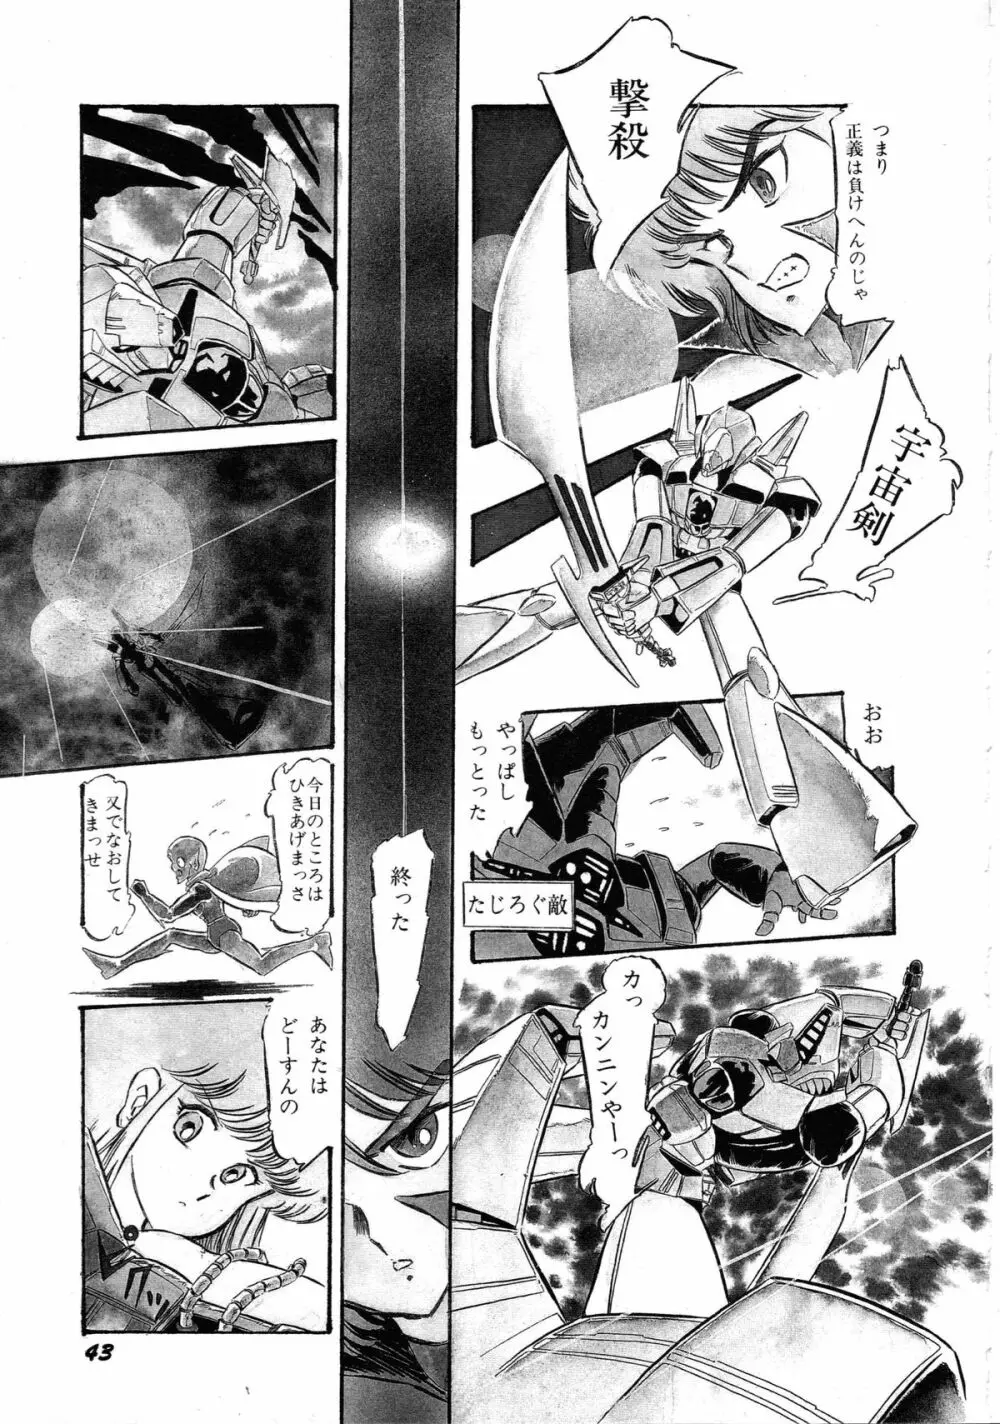 ロボット&美少女傑作選 レモン・ピープル1982-1986 47ページ